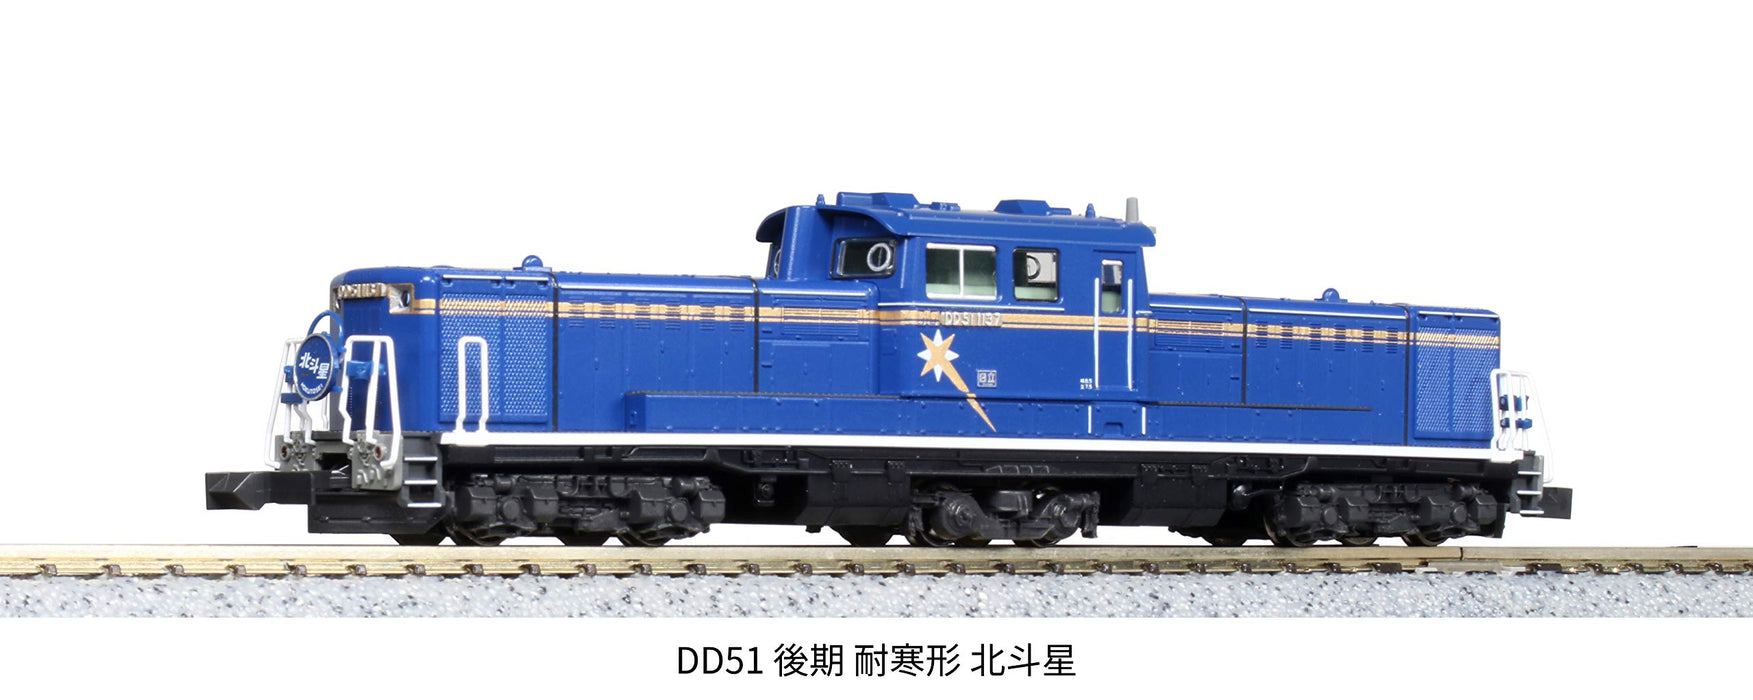 KATO DD51 - 模型、プラモデル